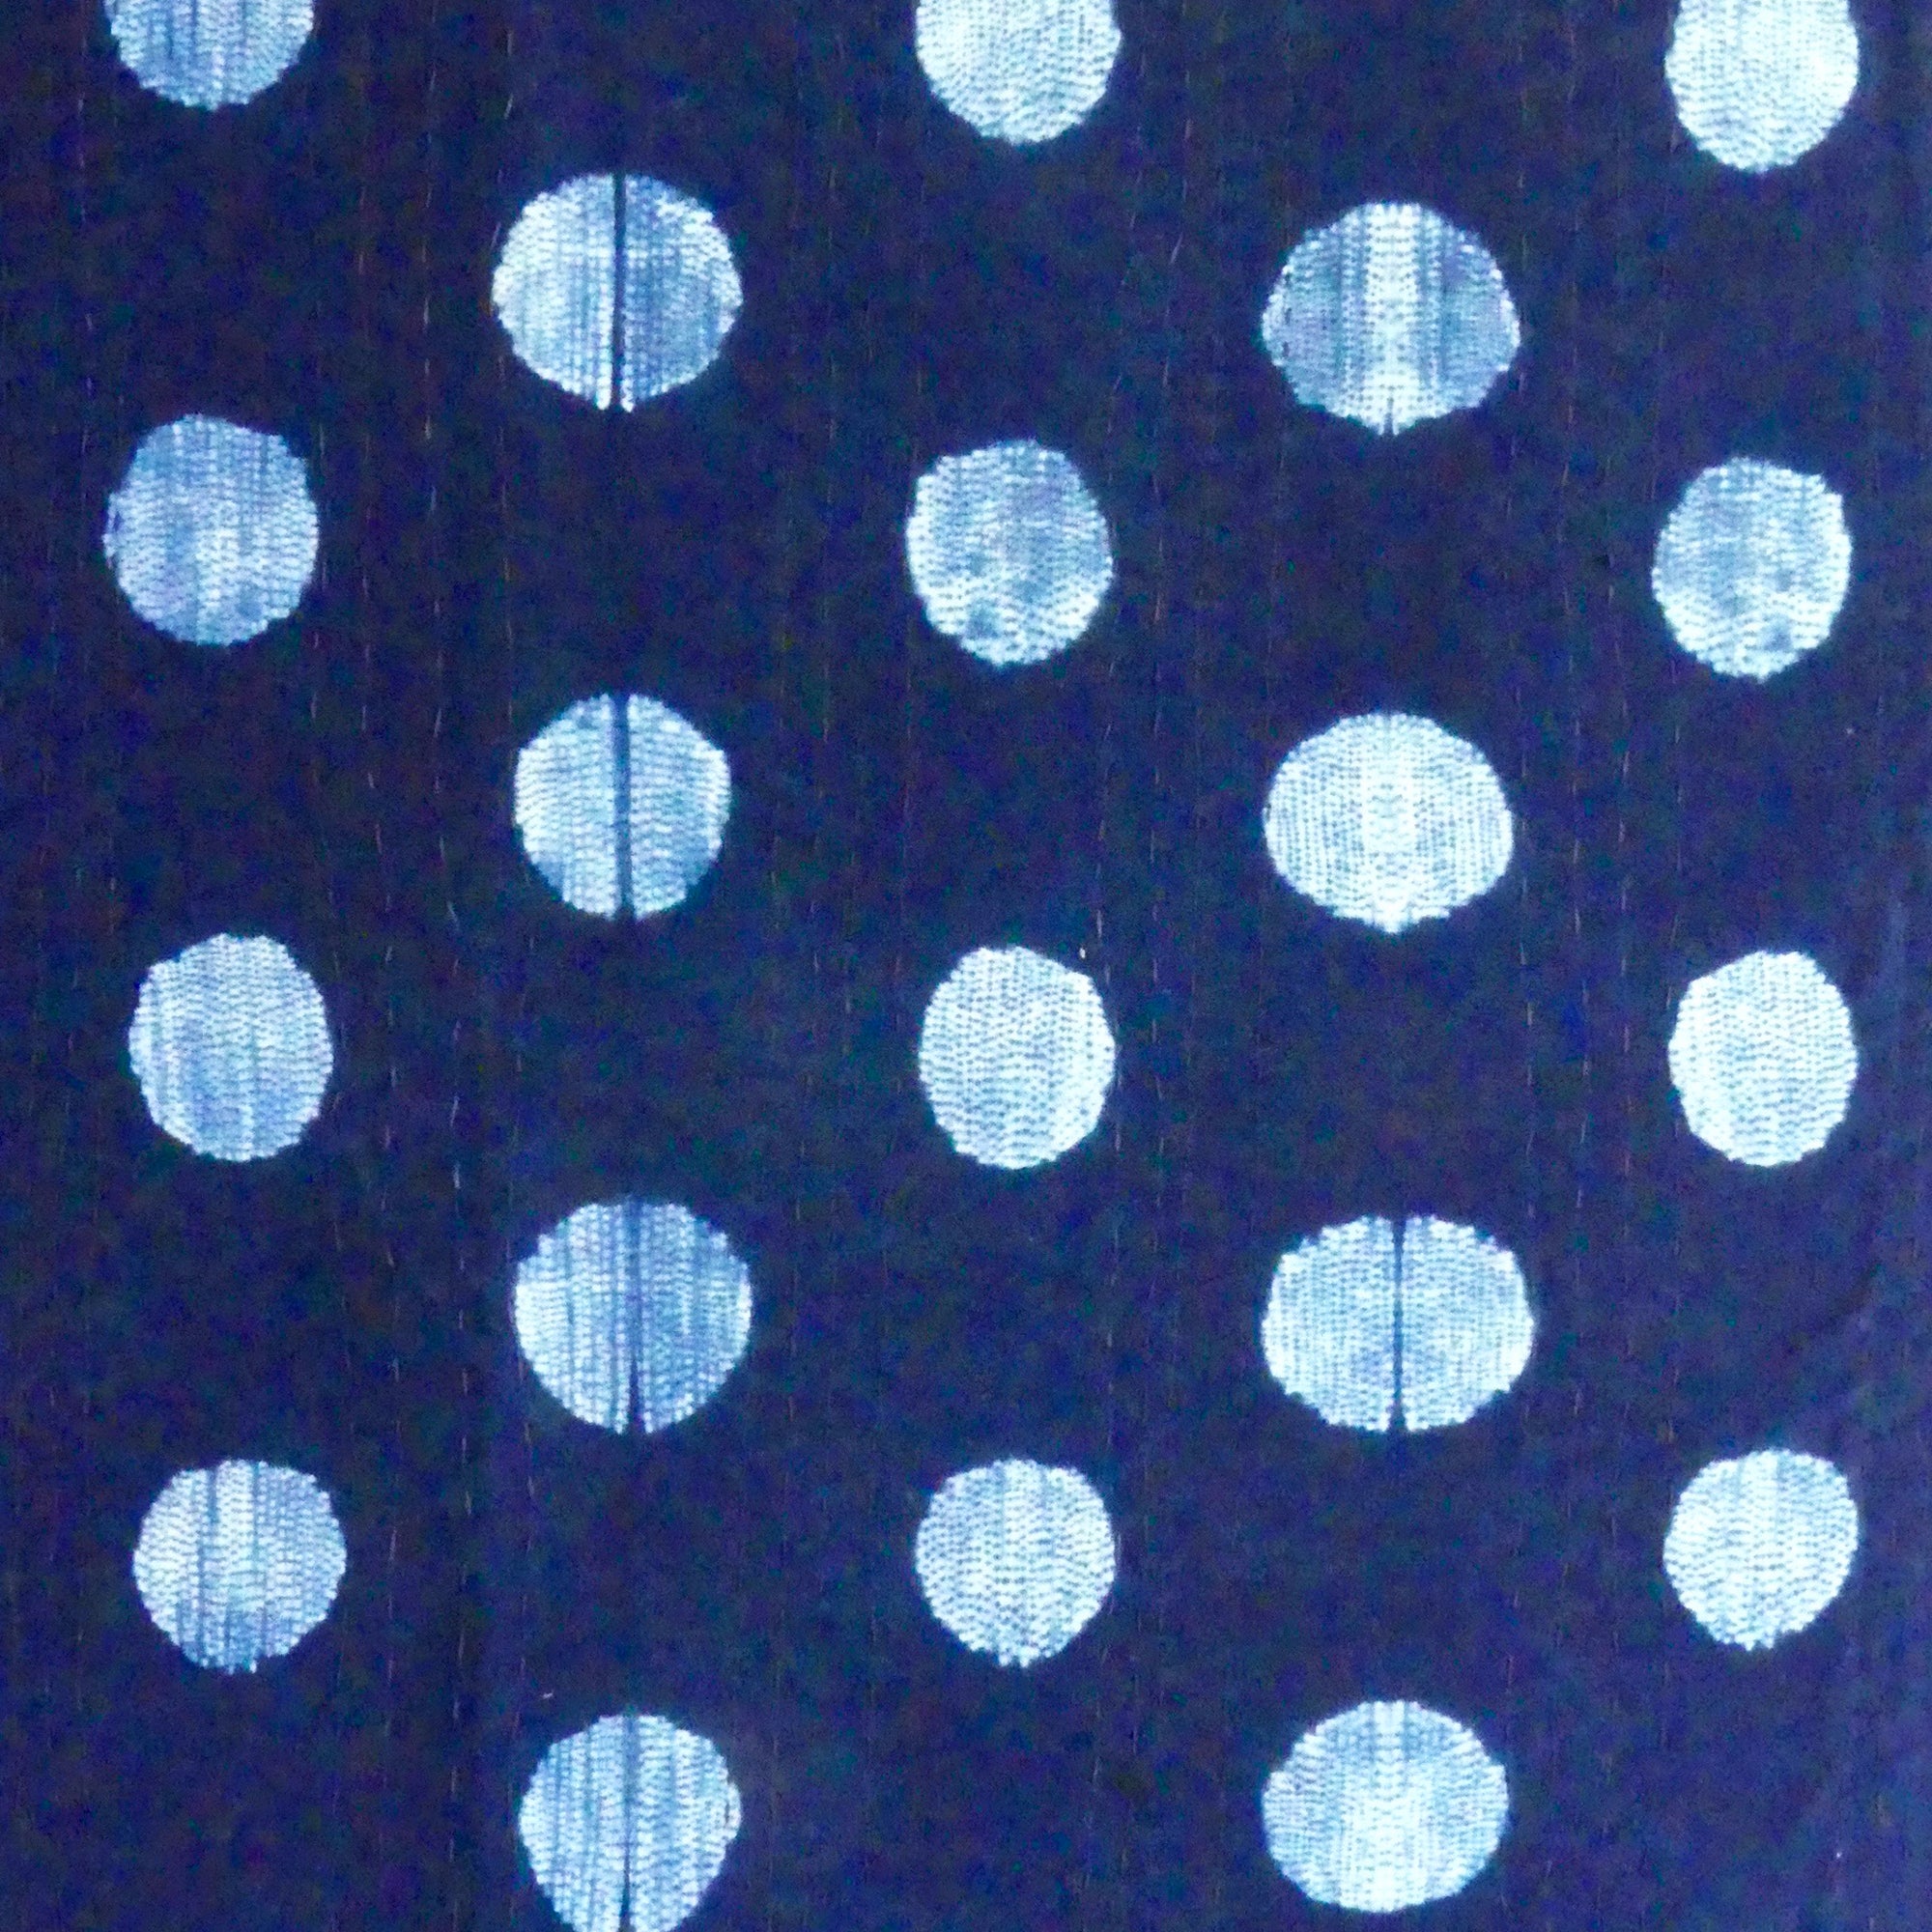 Blue Velvet quilt